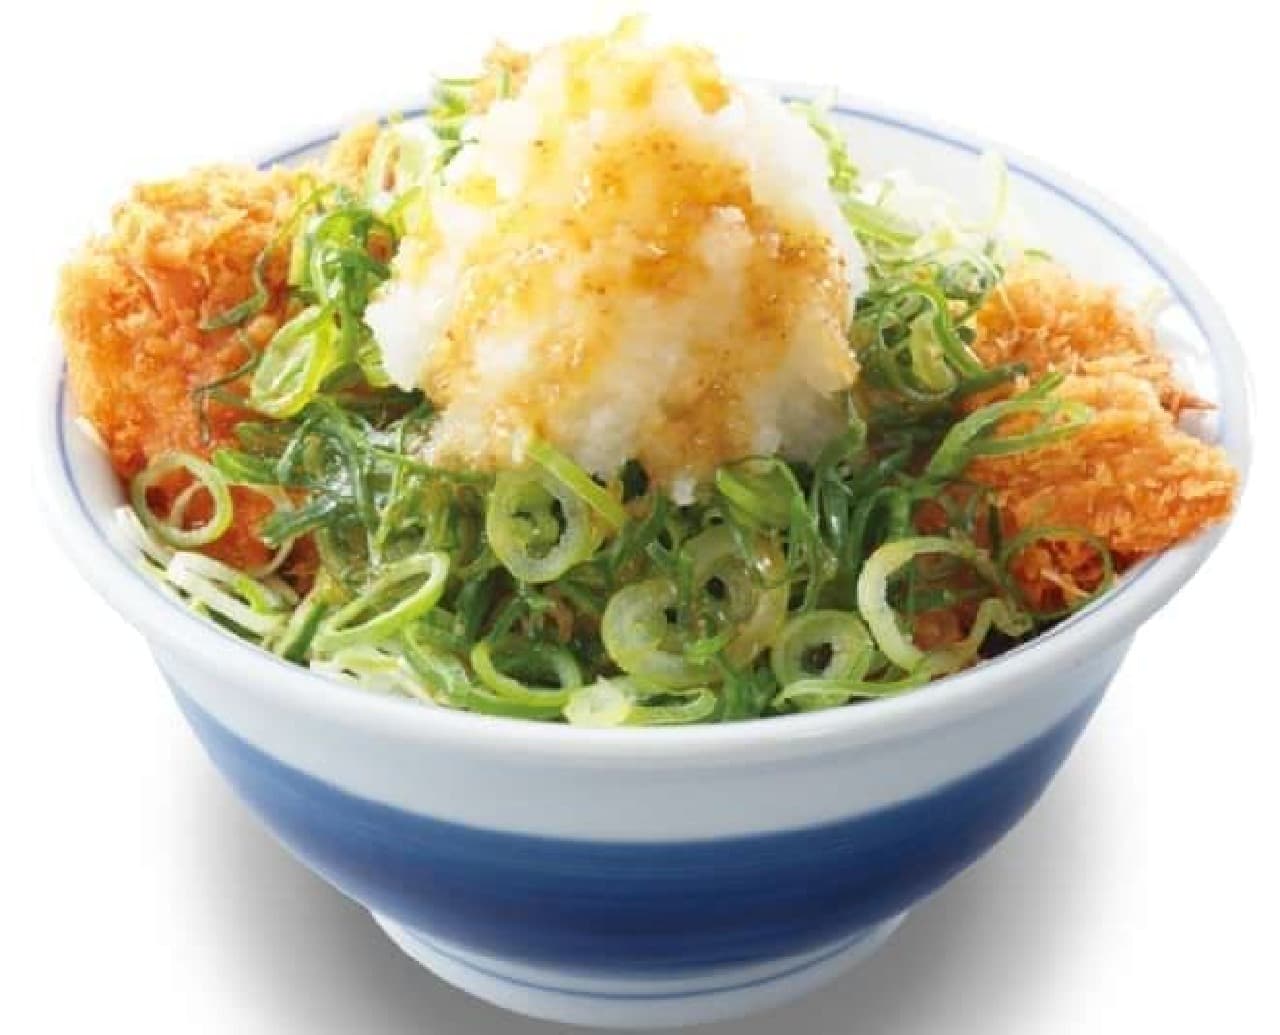 Katsuya "Grated chicken cutlet bowl with spicy yuzu pepper"